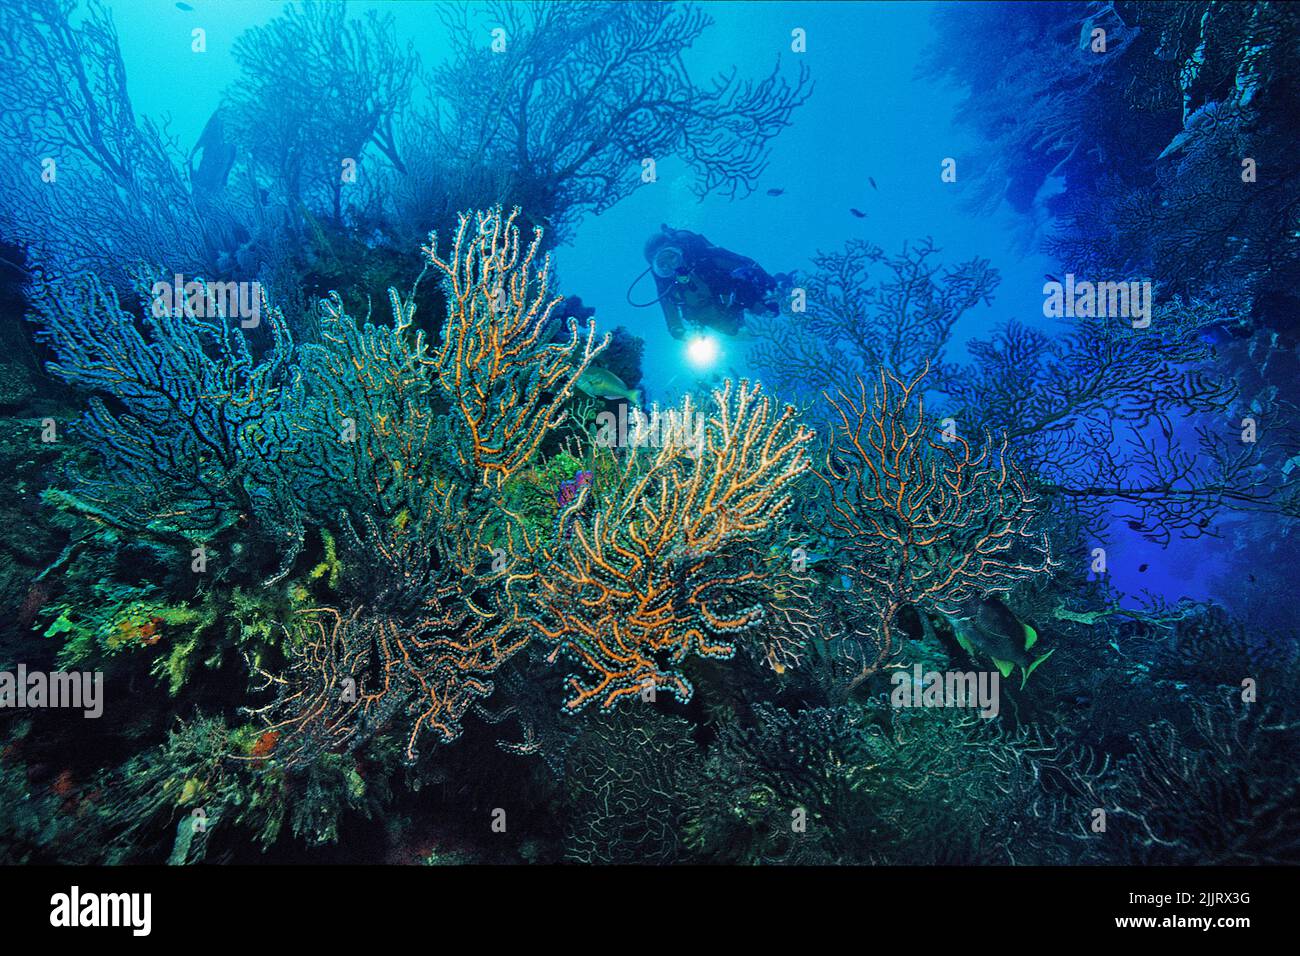 Récif de corail des Caraïbes avec ventilateurs géants en eau profonde (Iciligorgia schrammi), Roatan, Honduras, Caraïbes, mer des Caraïbes Banque D'Images